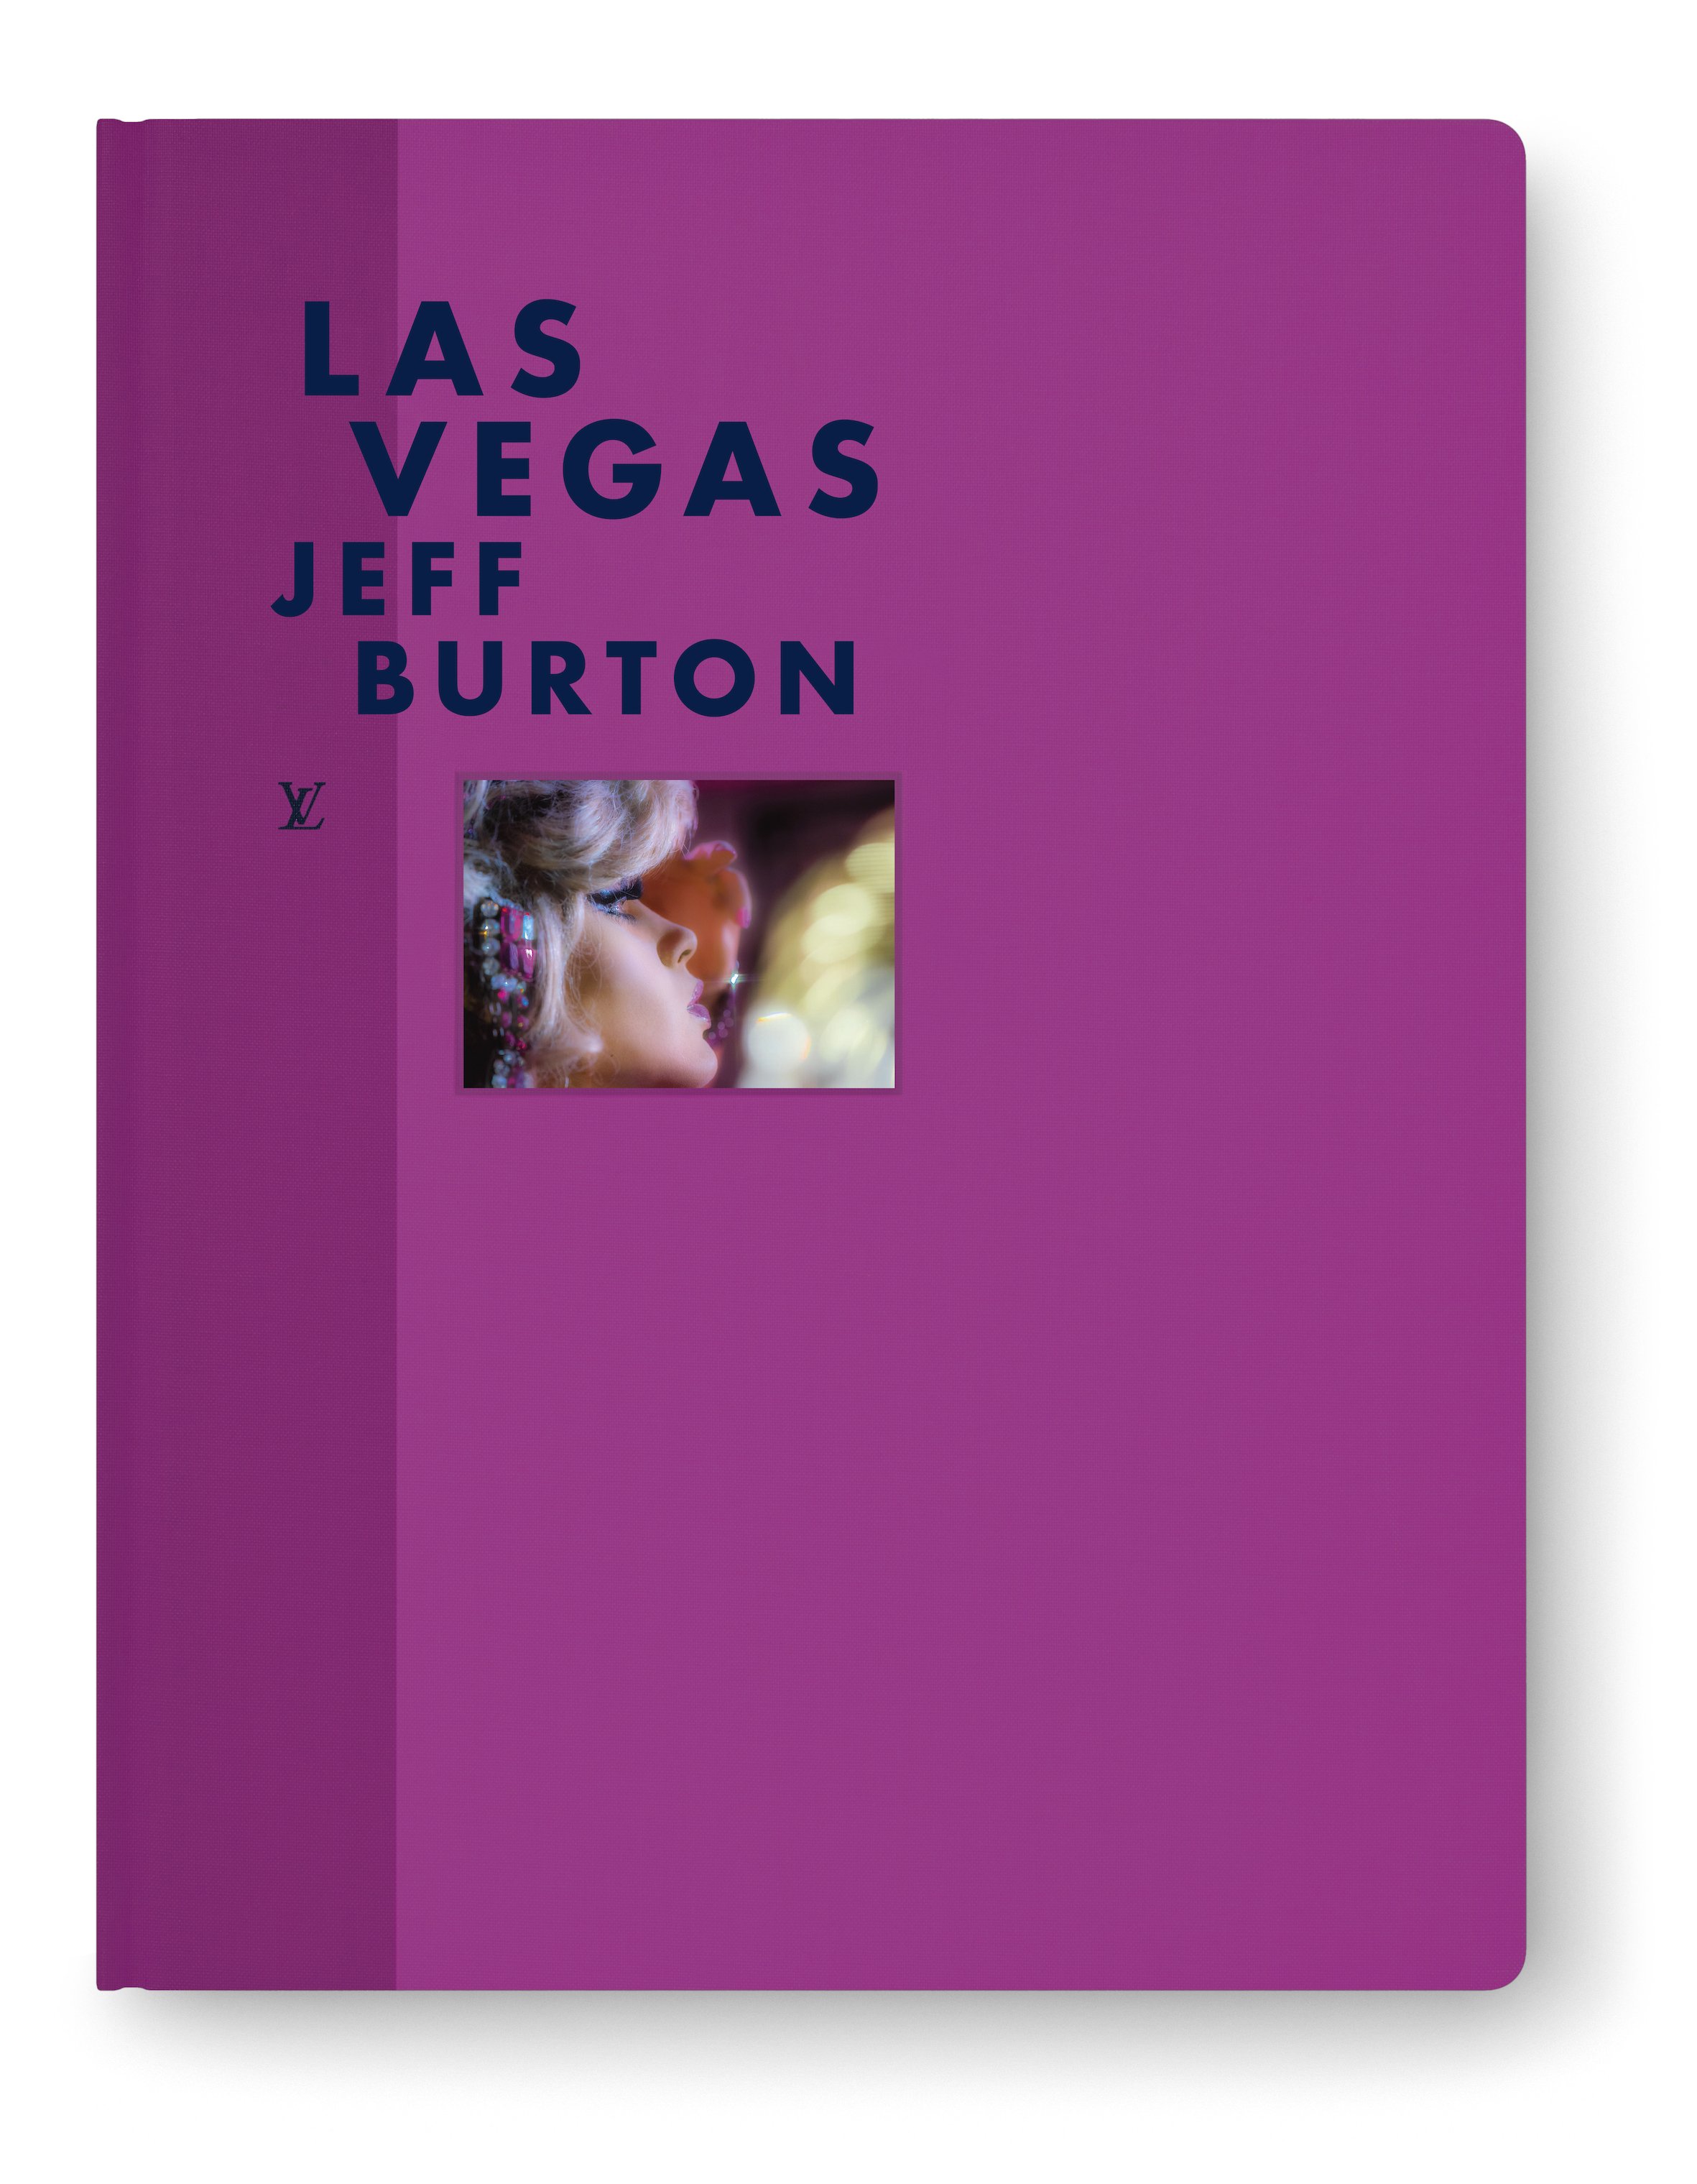 Louis Vuitton : Fashion Eye books on Buenos Aires and Las Vegas